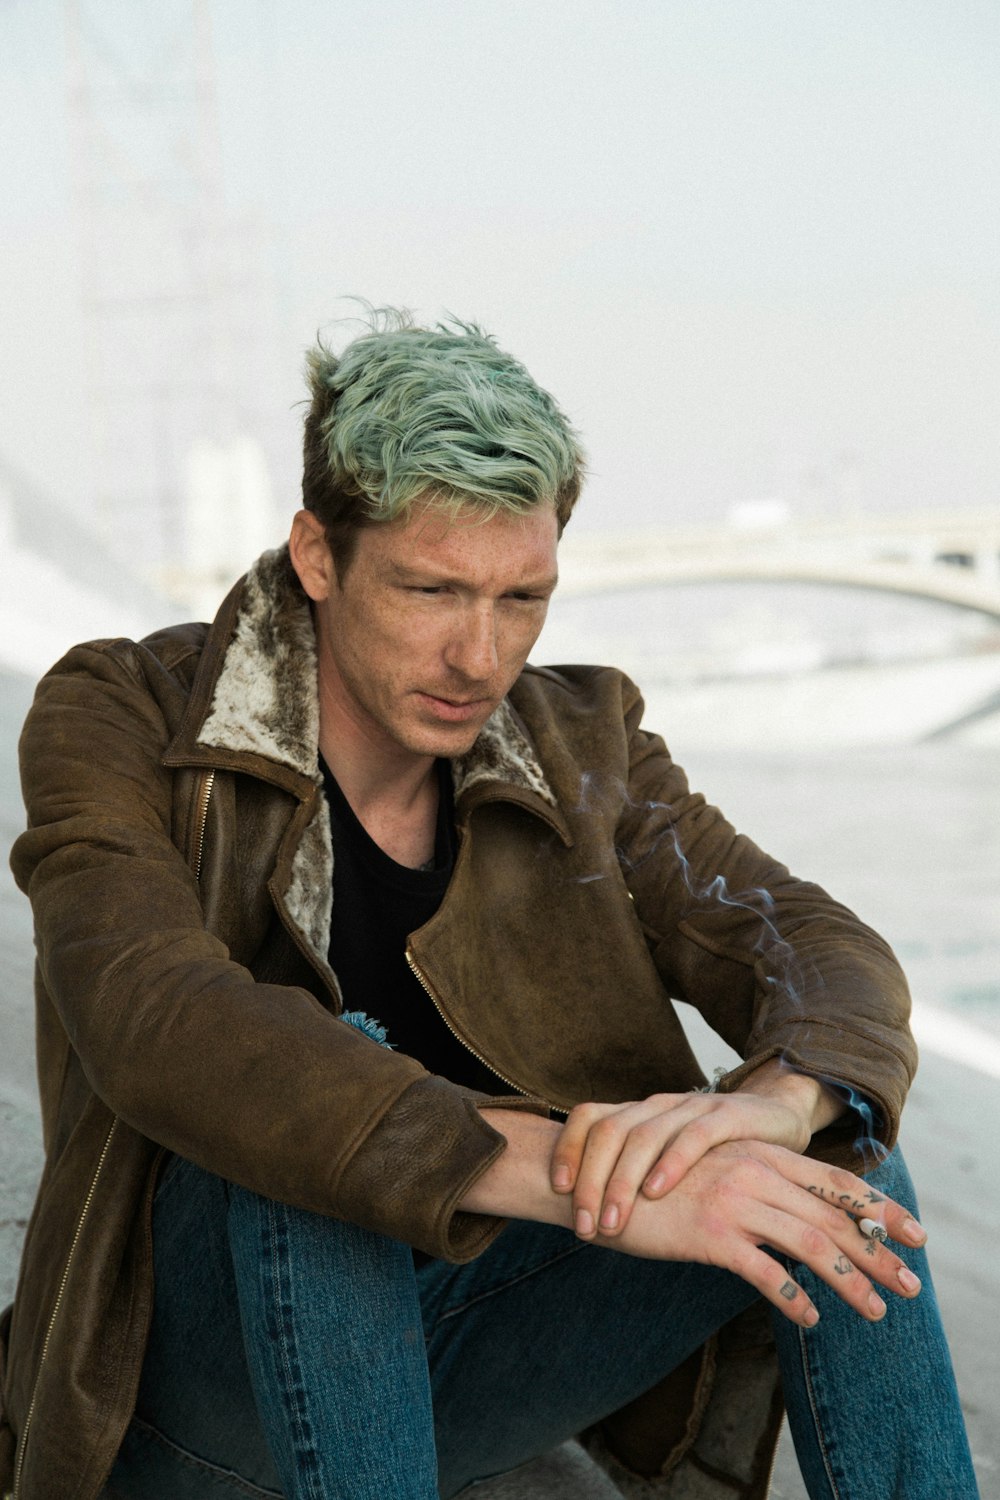 L'uomo con i capelli verdi in camicia nera ed il cappotto marrone si siede sulla sabbia marrone vicino al ponte sospeso bianco